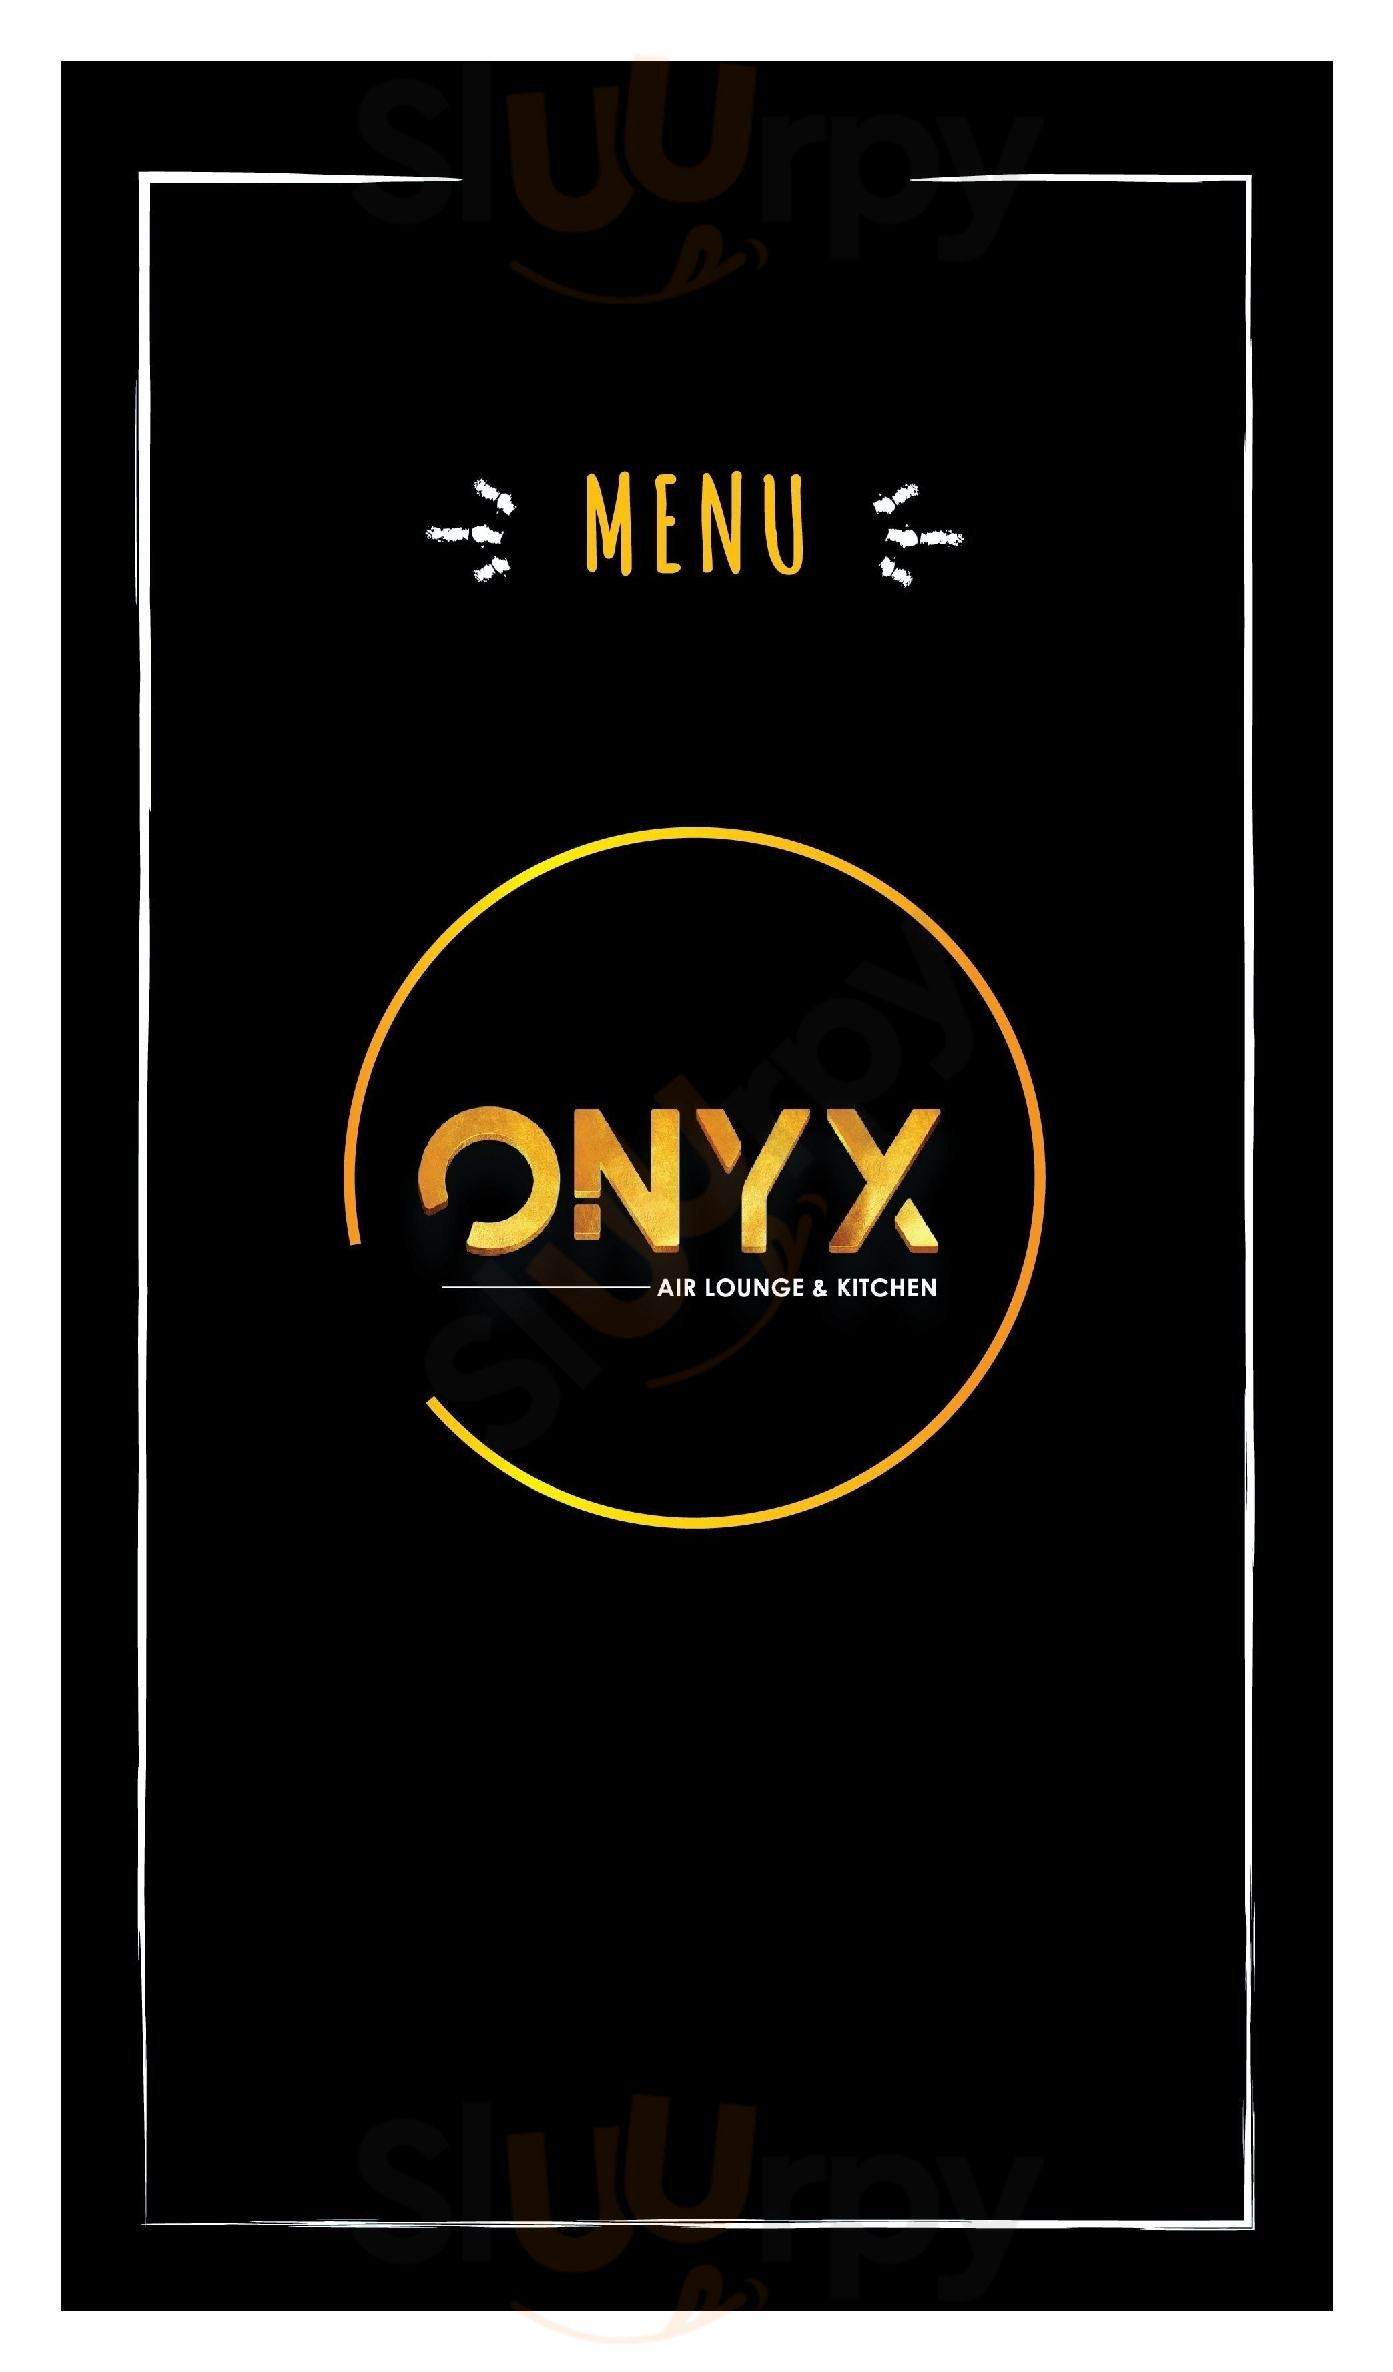 Onyx Air Lounge & Kitchen Mangalore Menu - 1